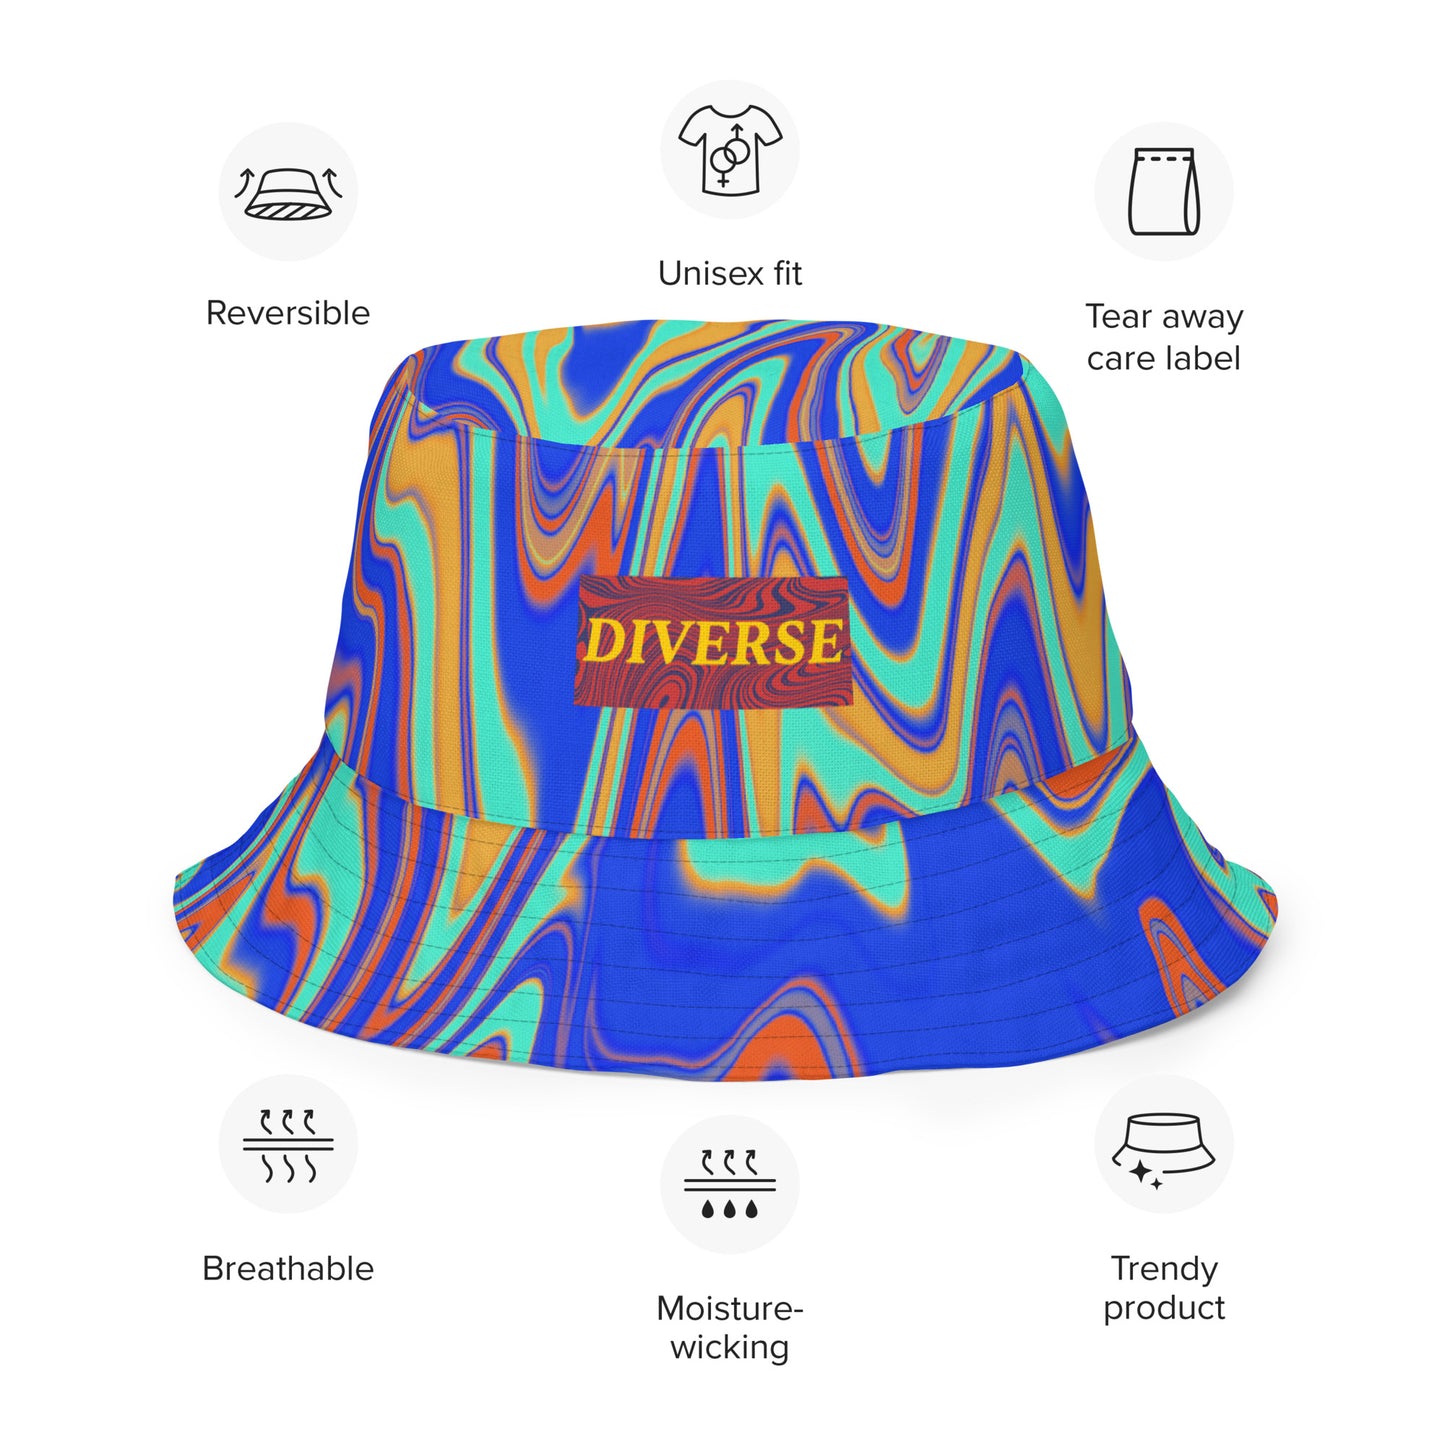 Euphorian Vision Reversible bucket hat